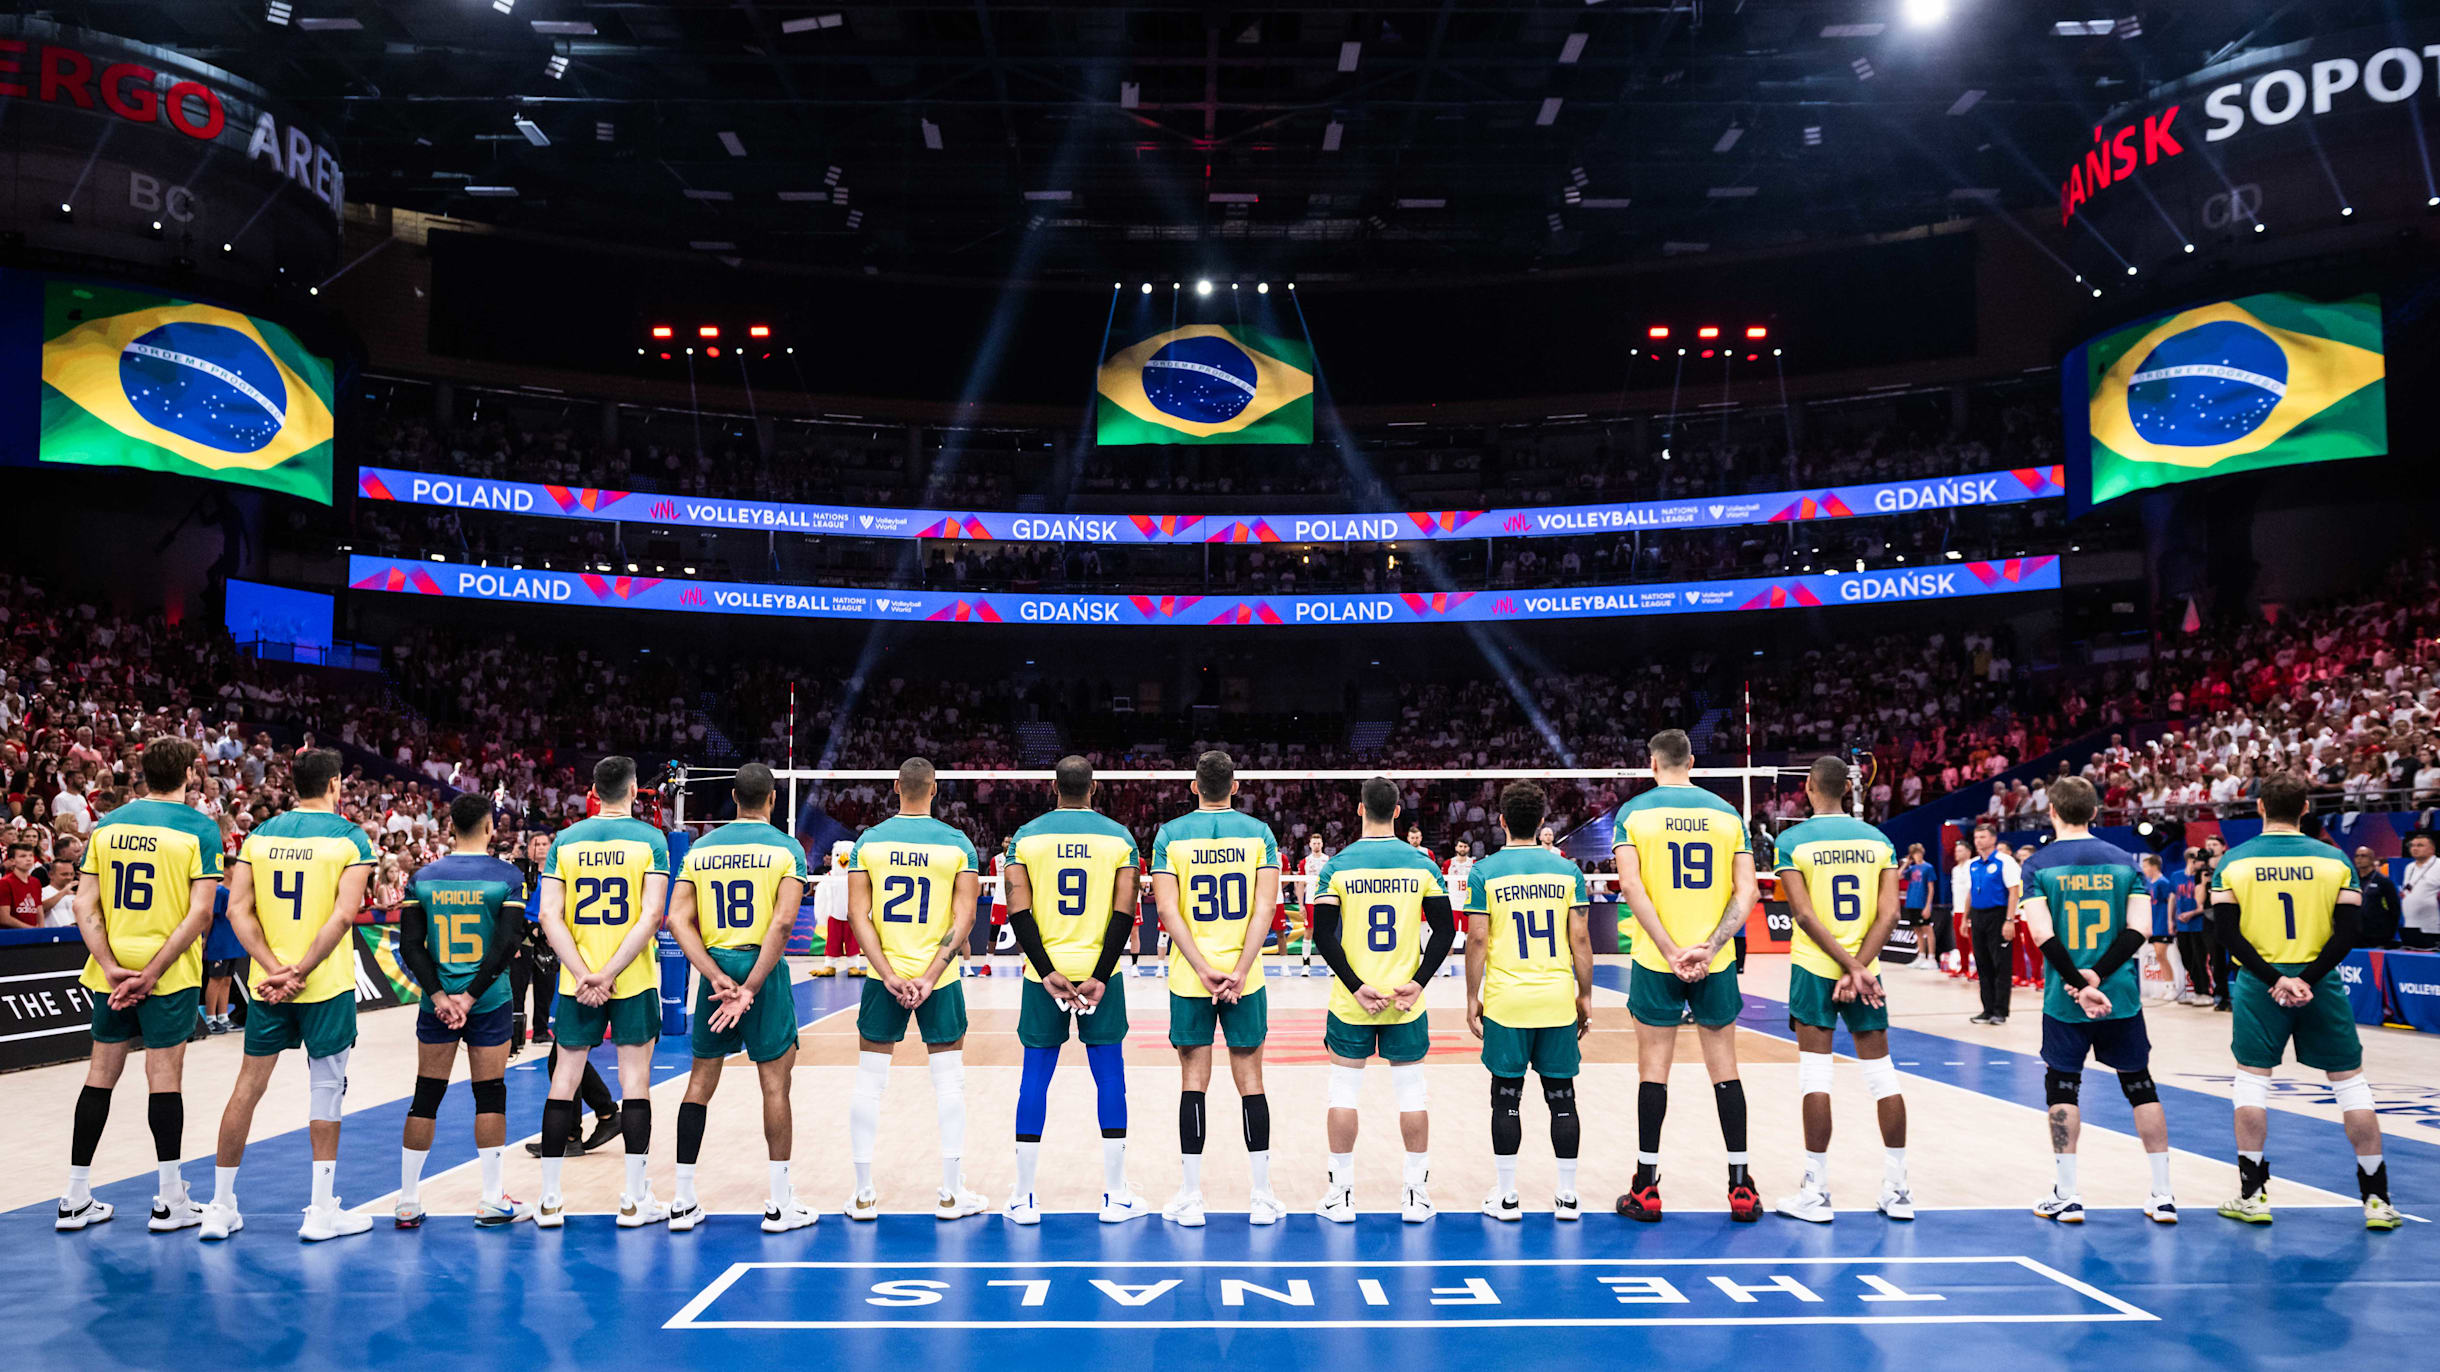 CAMPEONATO MUNDIAL DE VÔLEI MASCULINO: Veja TABELA e grupo do Brasil no  Mundial de Vôlei Masculino; confira as datas das partidas